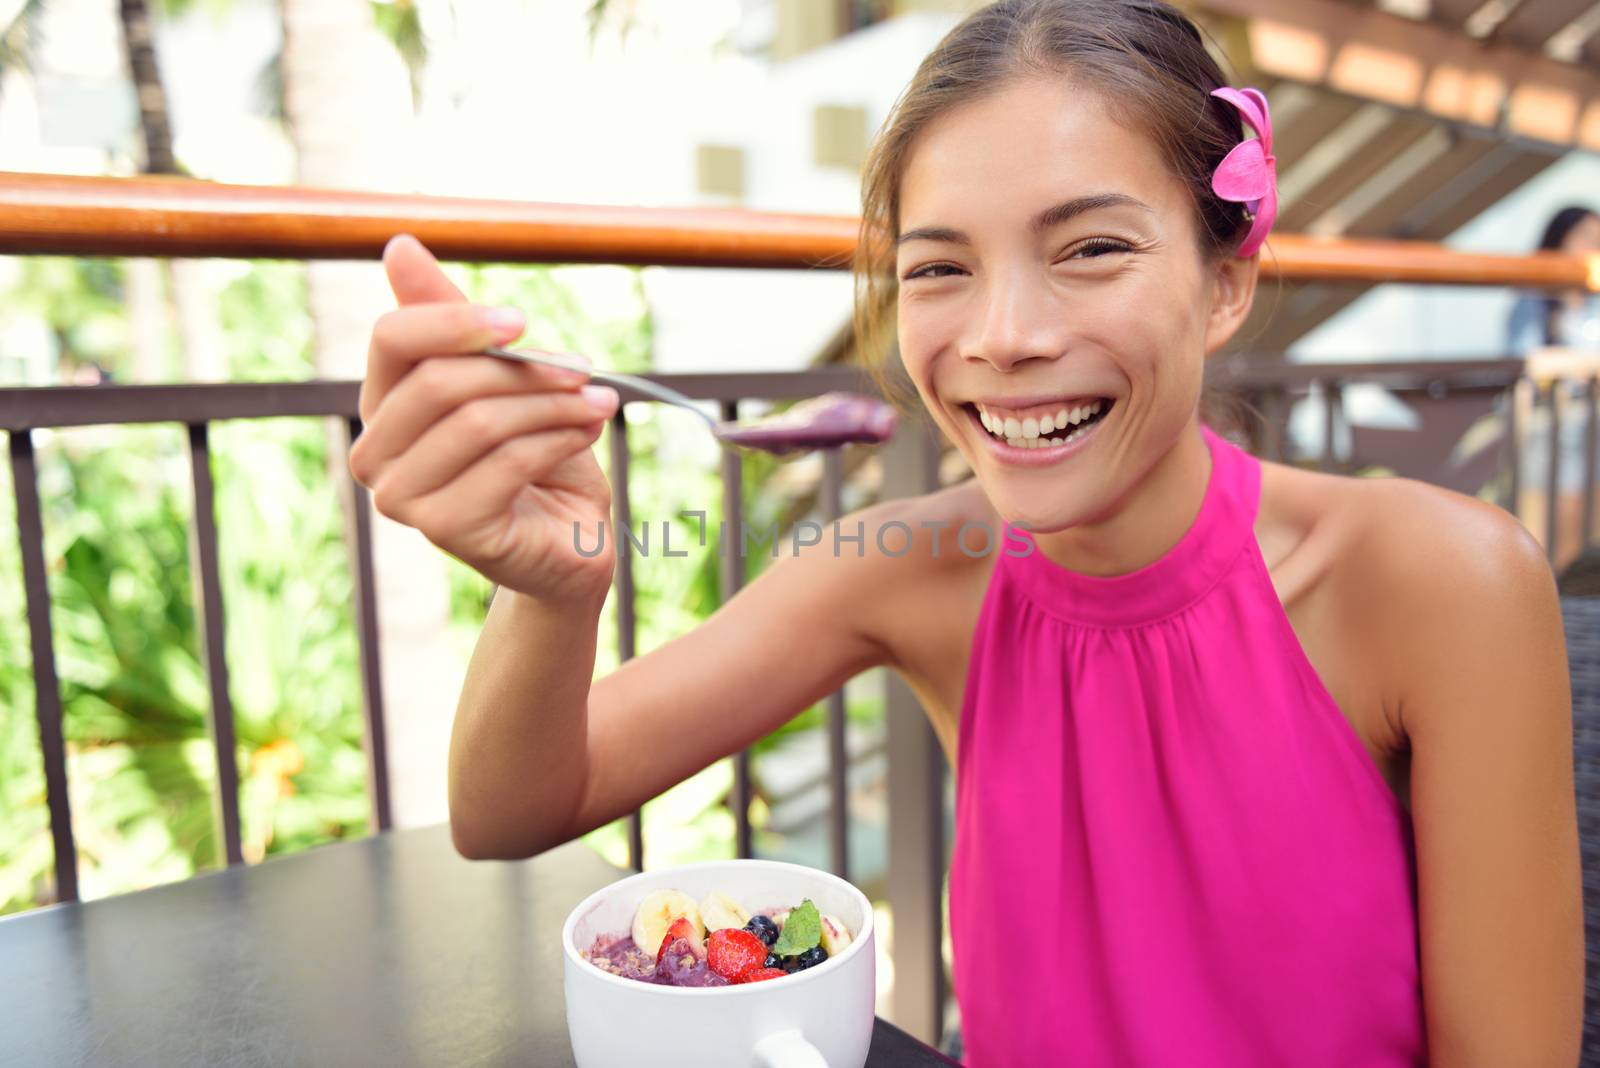 Acai bowl - woman eating healthy food happy by Maridav